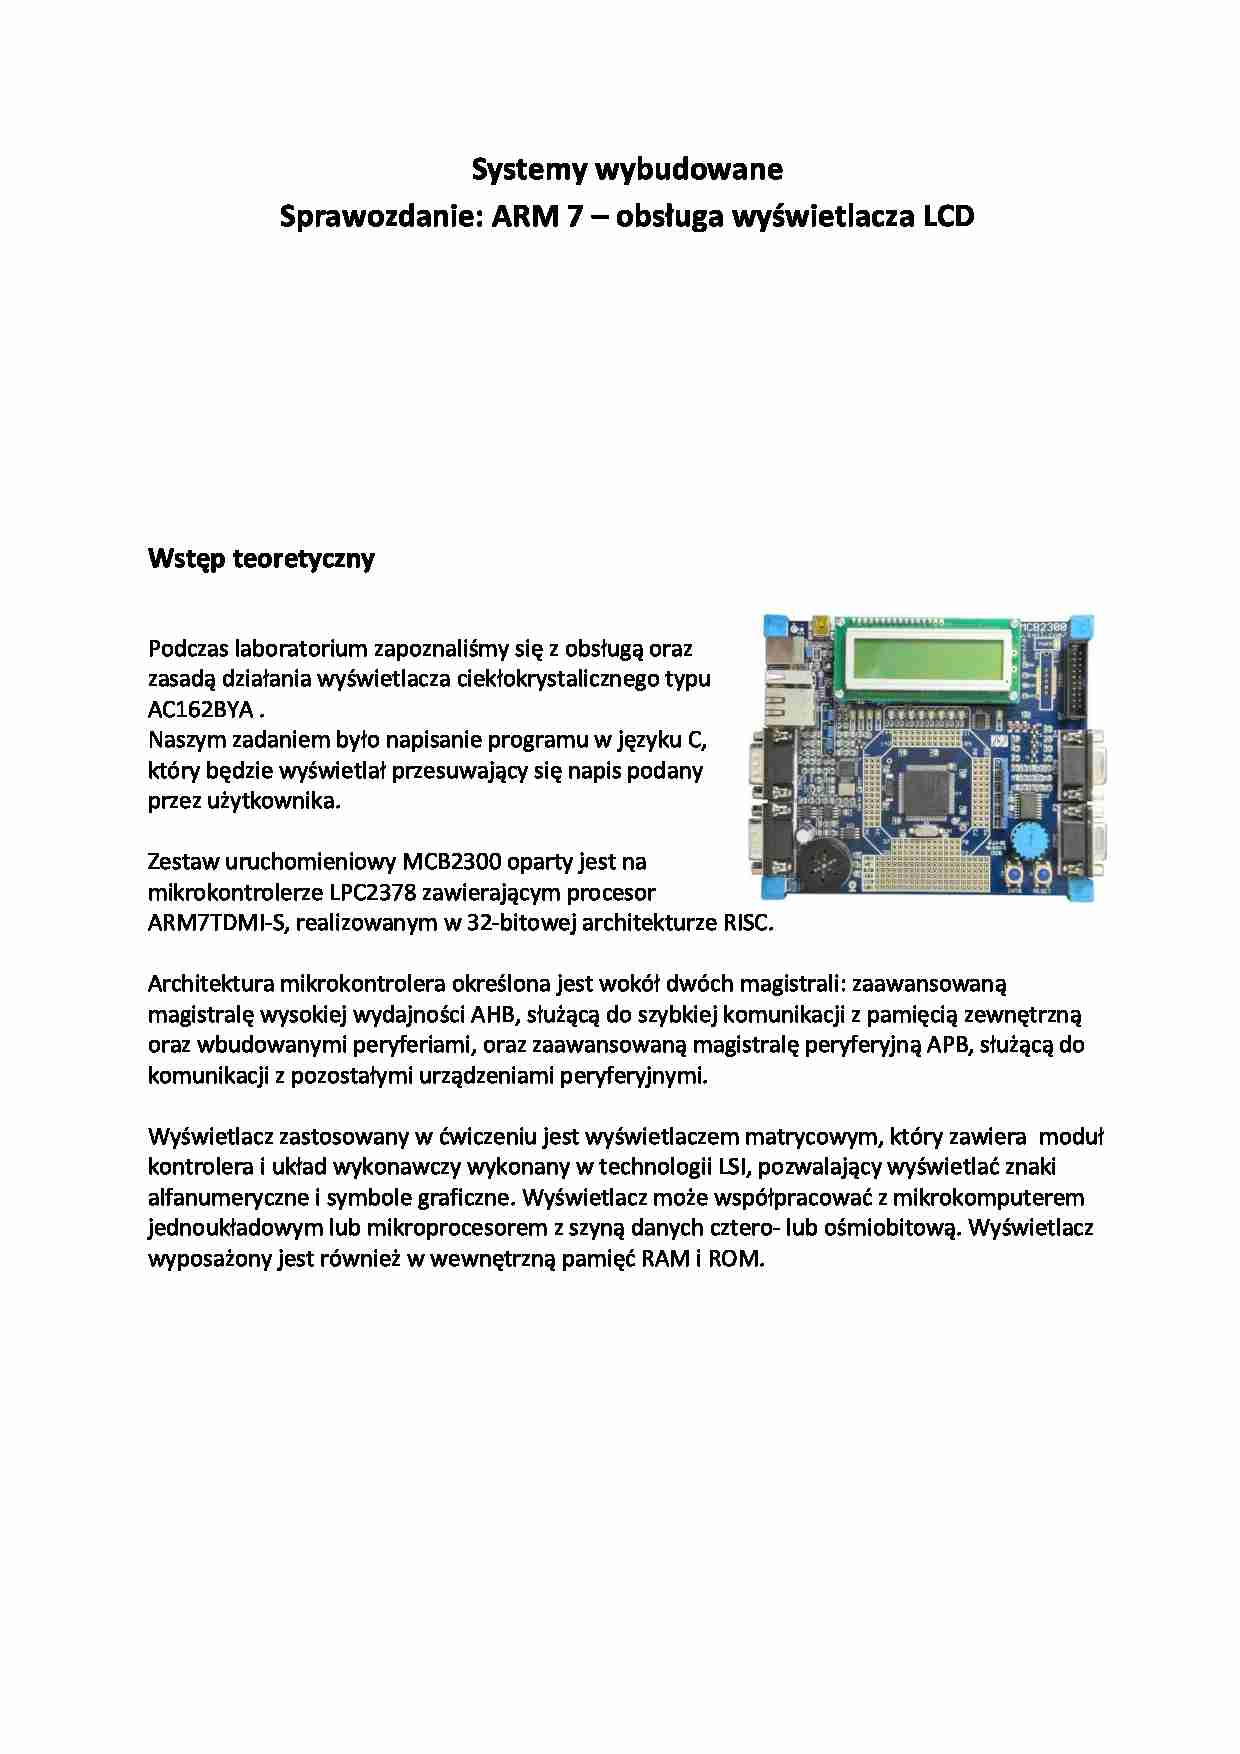 ARM 7 -obsługa wyświetlacza LCD-sprawozdanie - strona 1